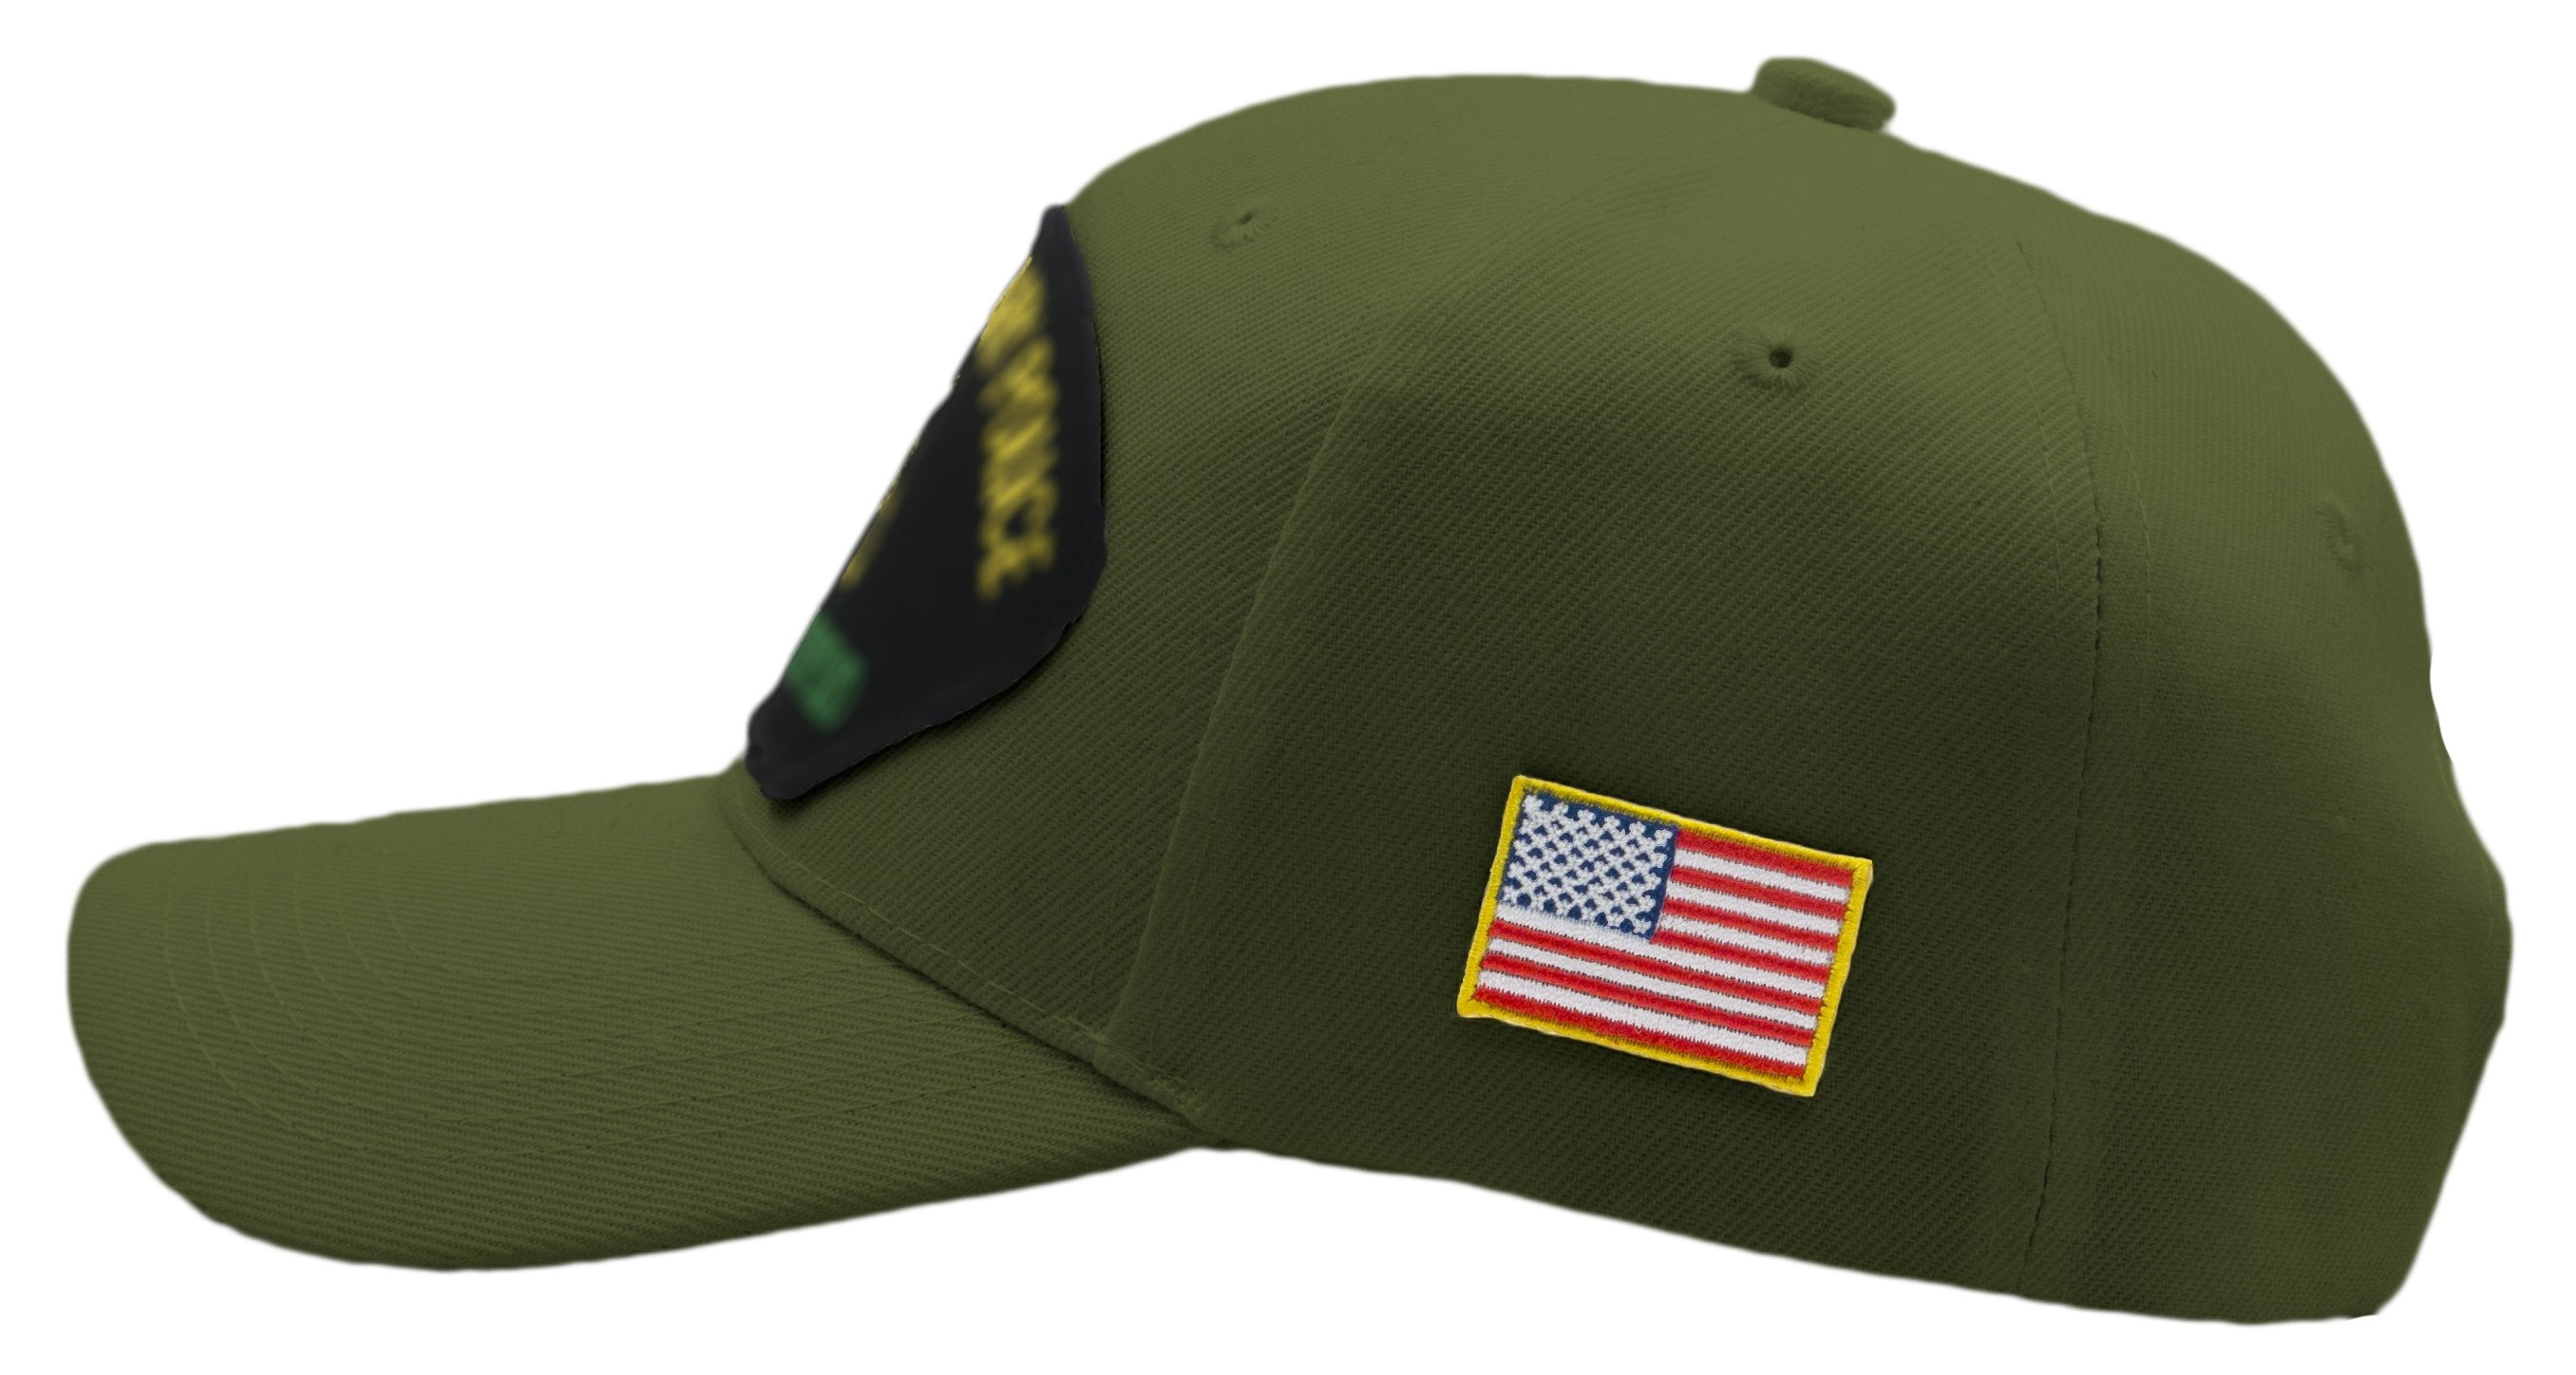 US Air Force - Korean War Veteran Hat - Multiple Colors Available